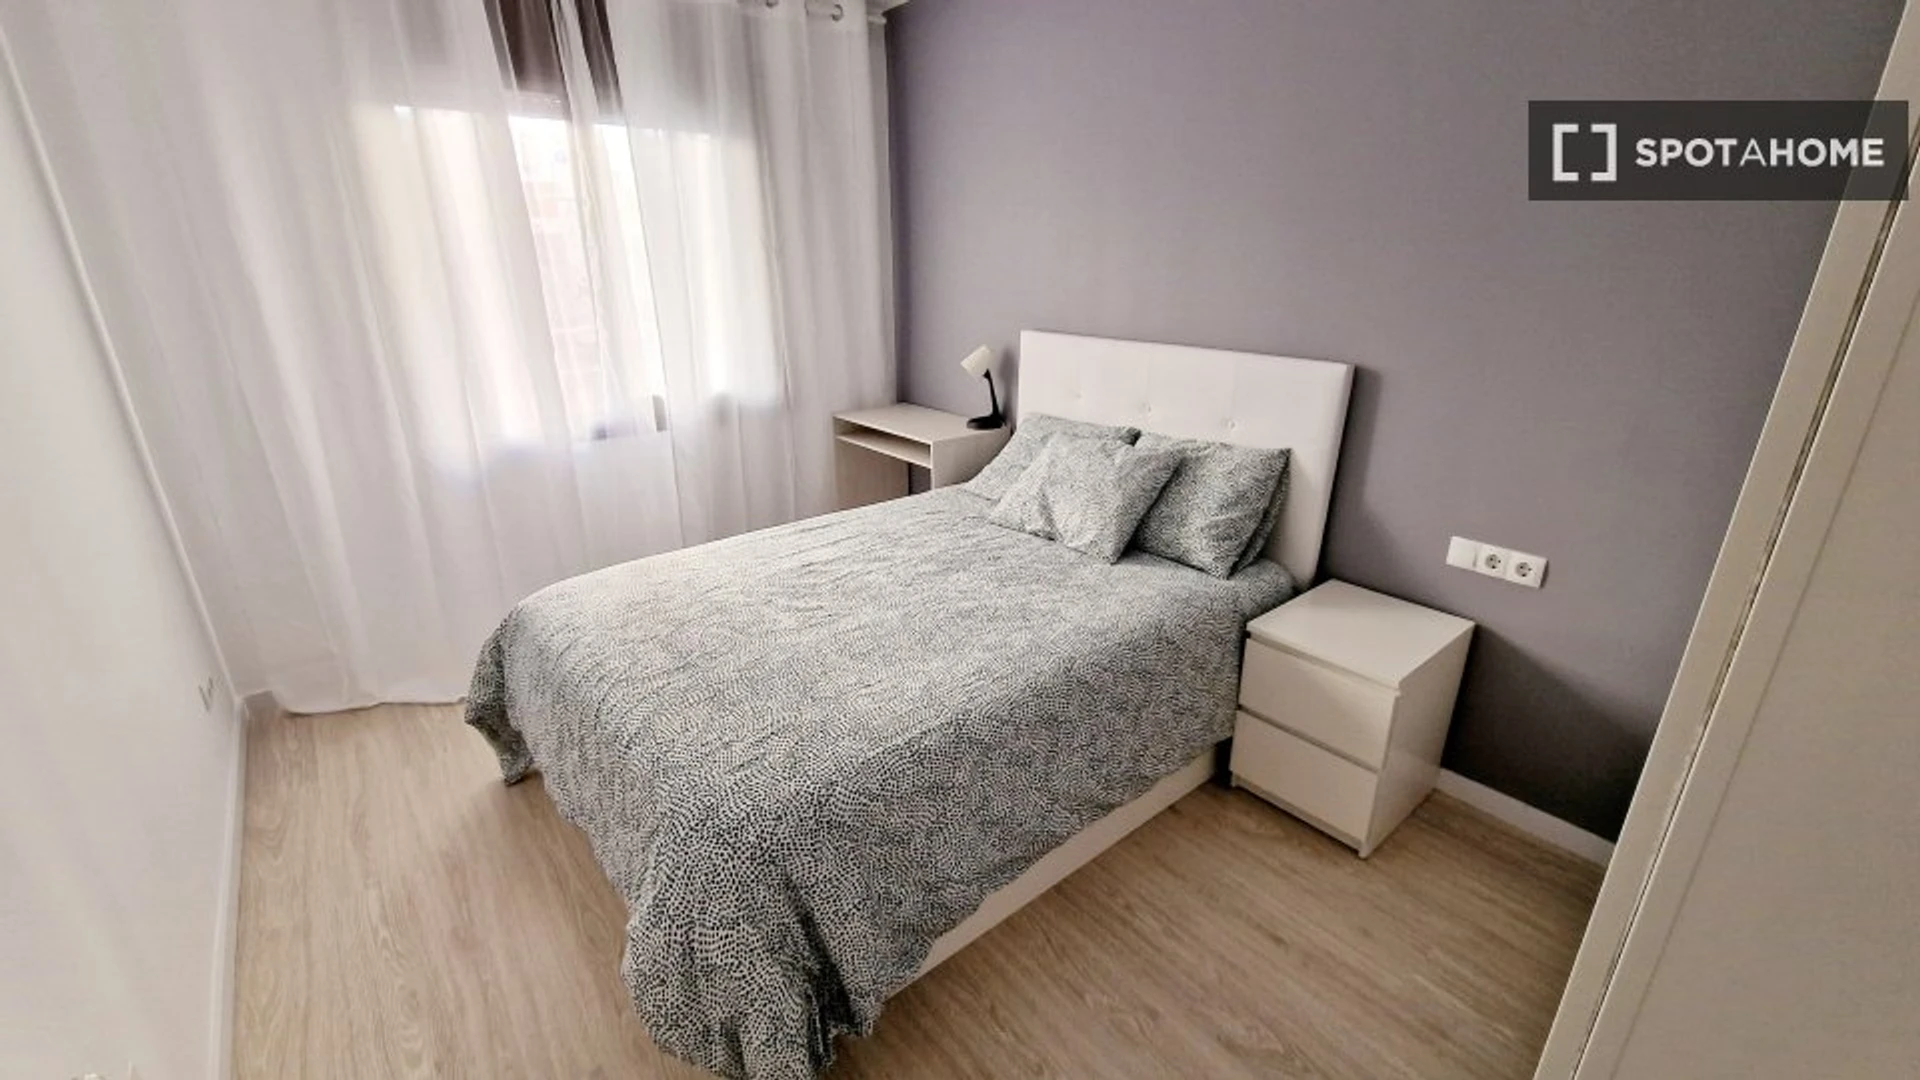 Alquiler de habitaciones por meses en Cerdanyola Del Vallès